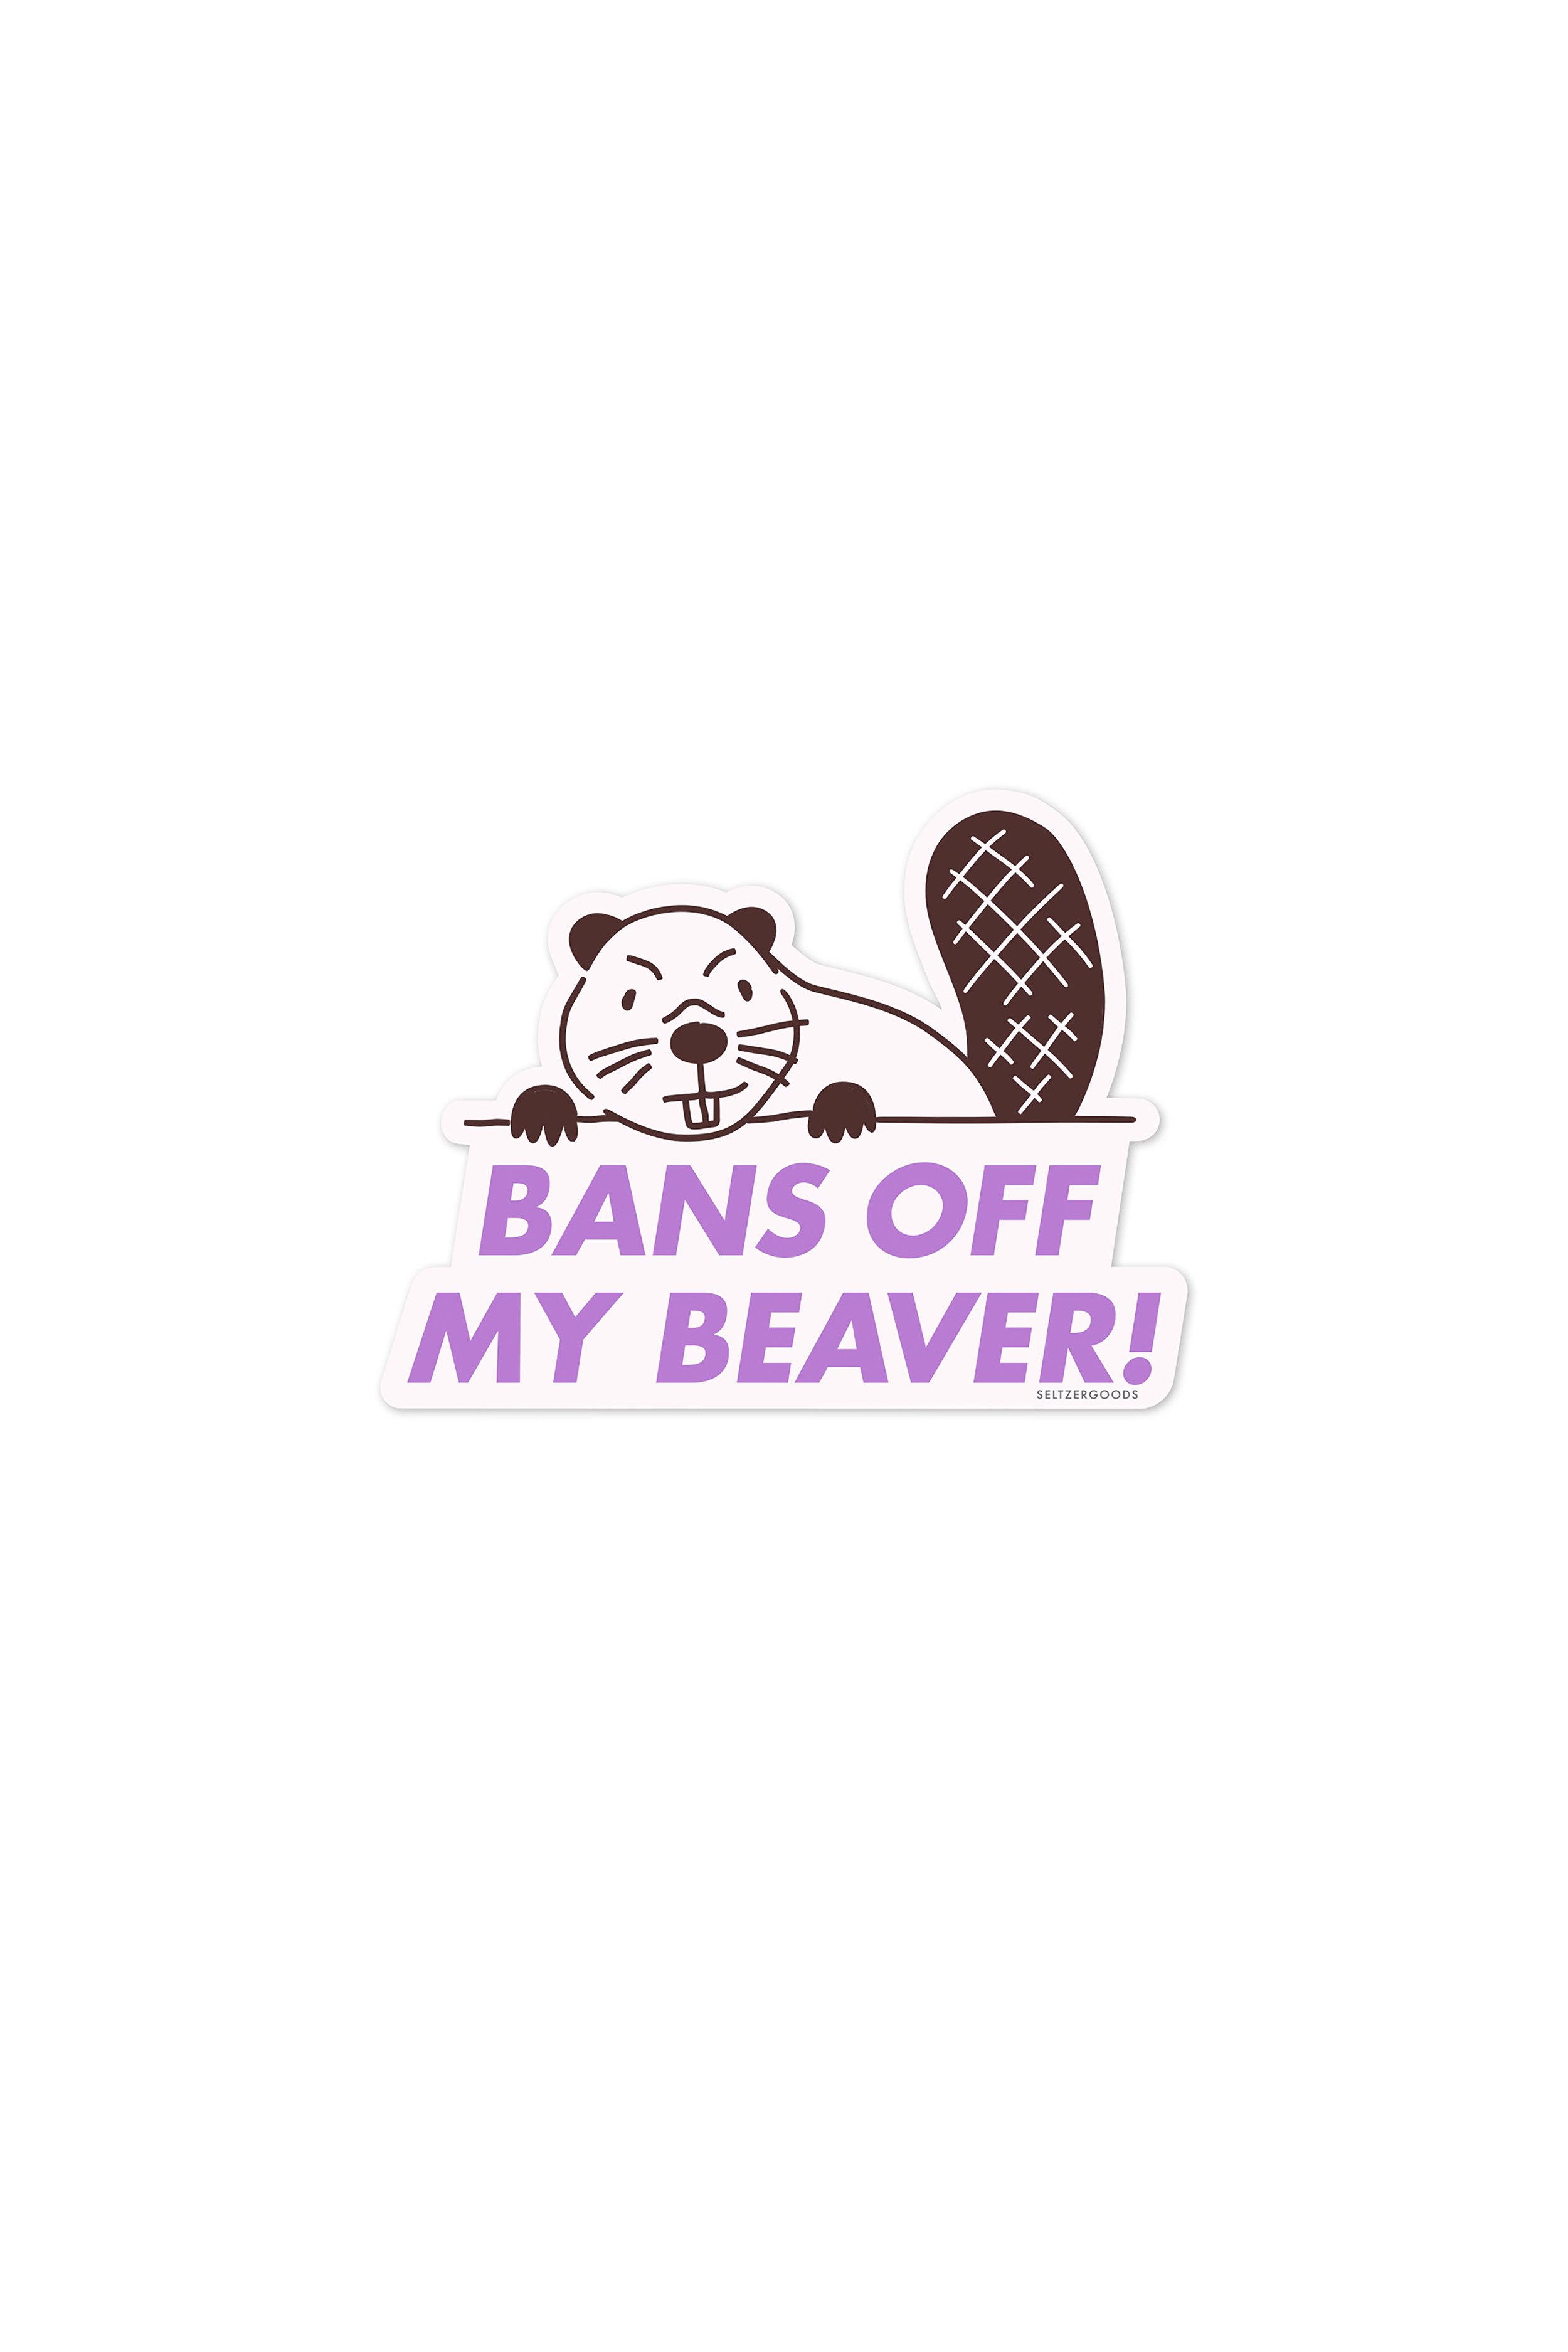 Bans off Beaver Sticker